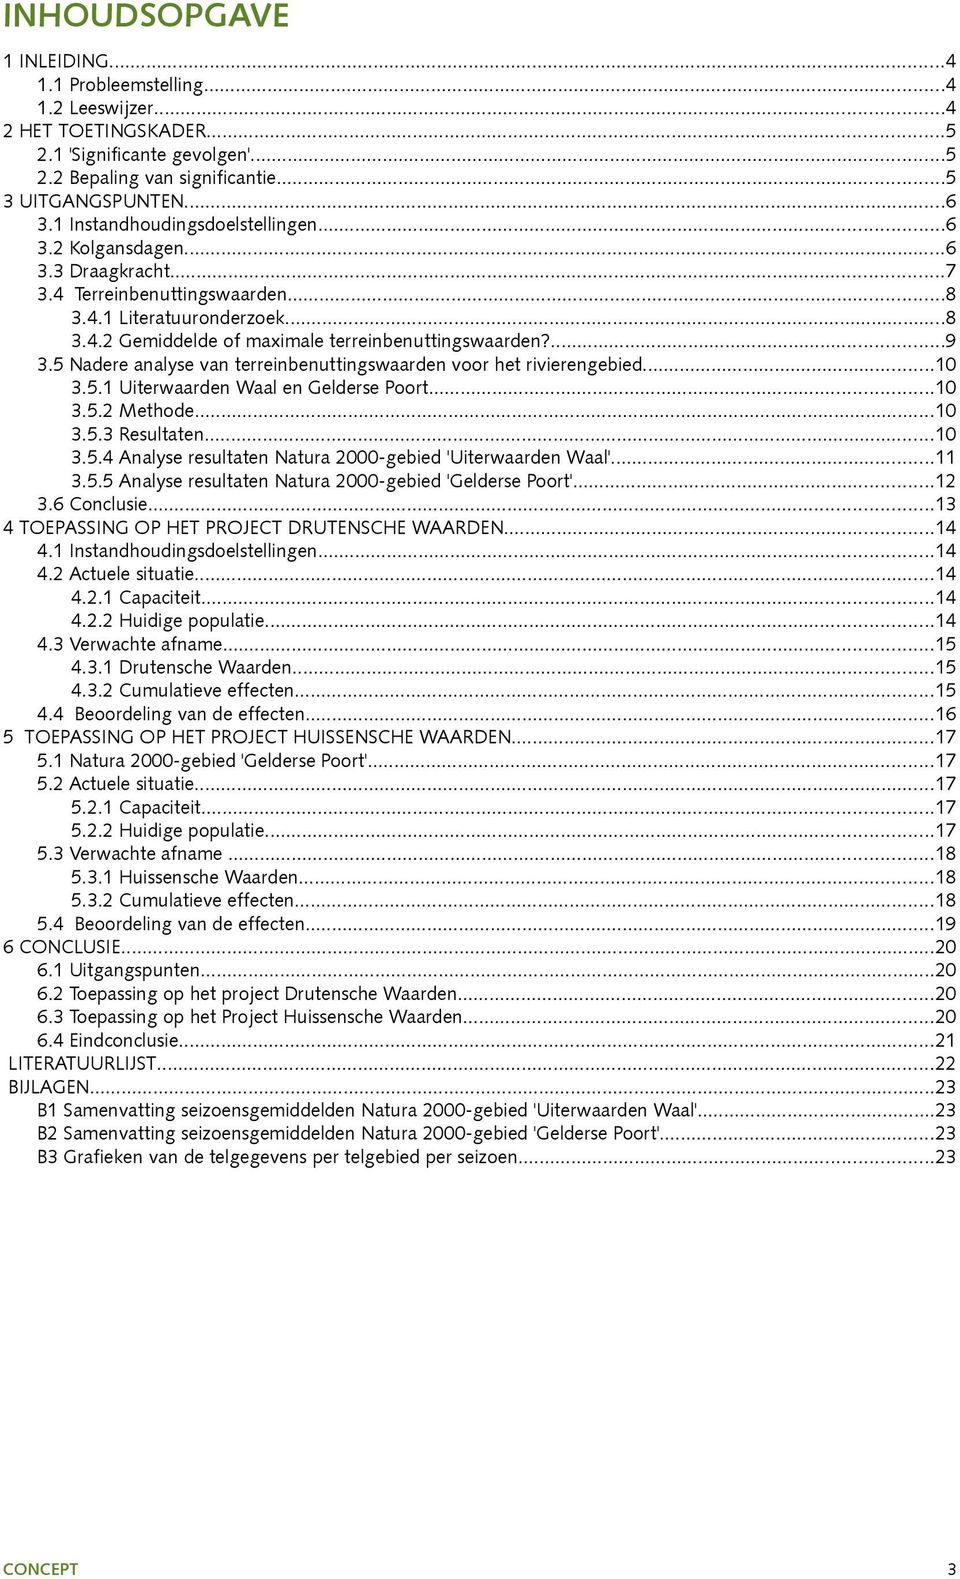 5 Nadere analyse van terreinbenuttingswaarden voor het rivierengebied...10 3.5.1 Uiterwaarden Waal en Gelderse Poort...10 3.5.2 Methode...10 3.5.3 Resultaten...10 3.5.4 Analyse resultaten Natura 2000-gebied 'Uiterwaarden Waal'.